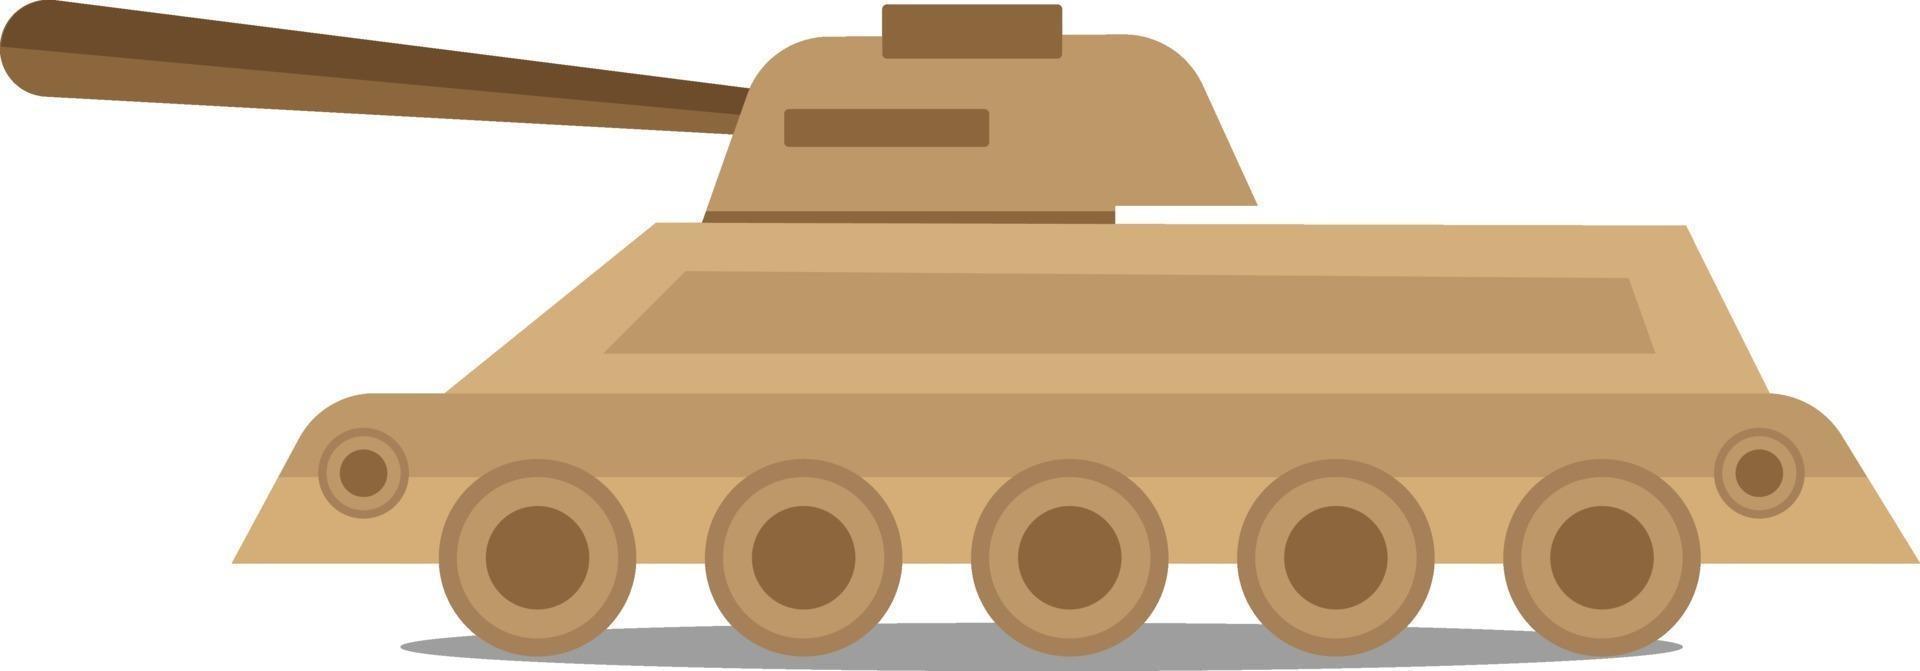 carro armato militare, illustrazione, vettore su sfondo bianco.